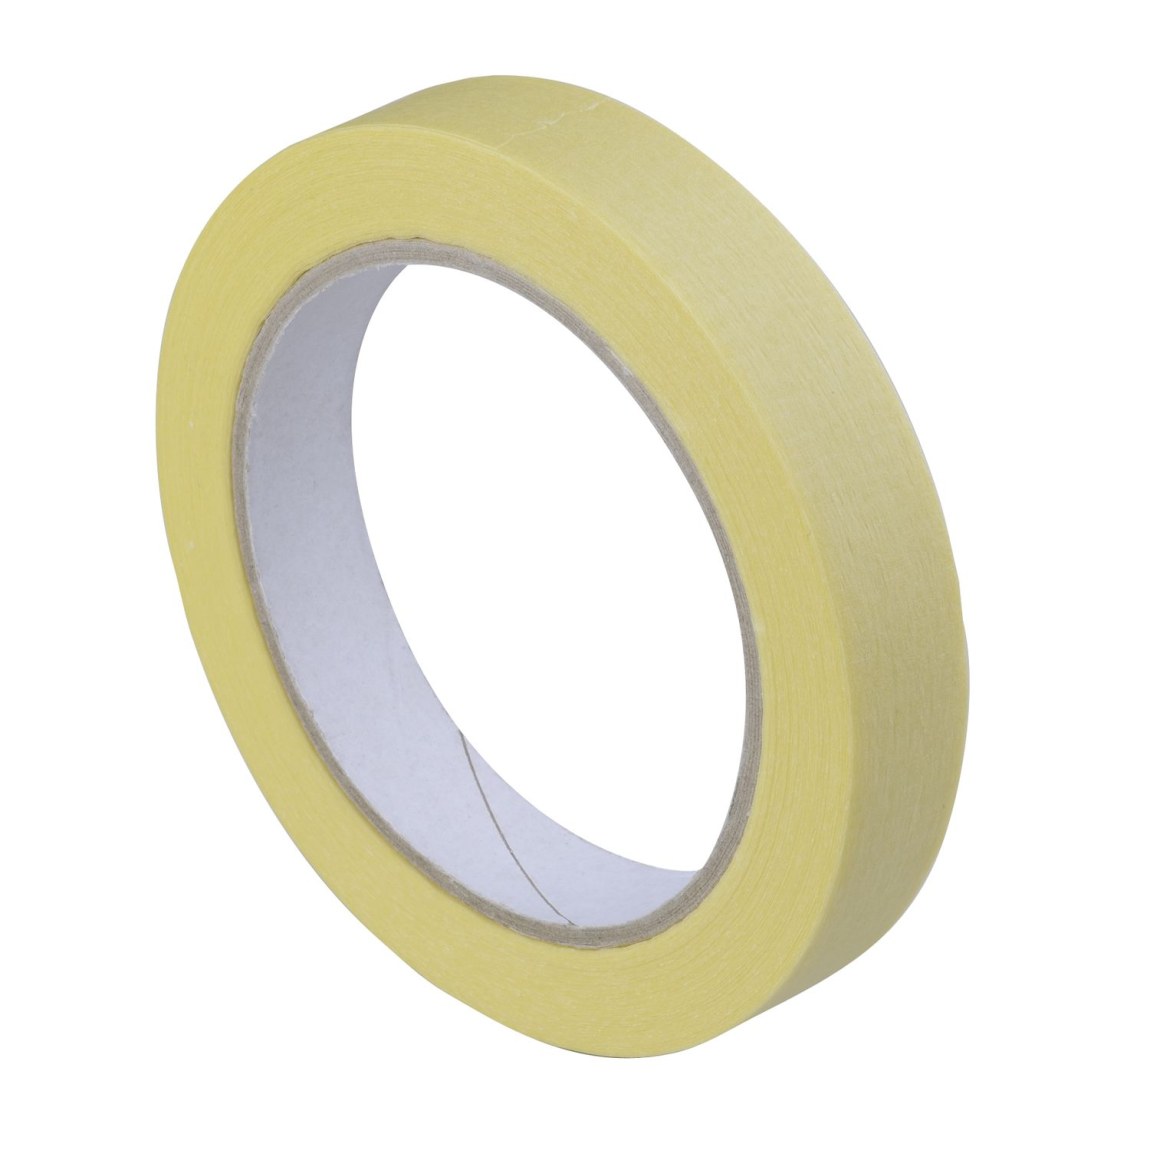 Krycí krepová páska žlutá 19 mm x 50 m - Železářství Chemicko-technické výrobky Lepicí pásky / Krycí pásky Krycí páska